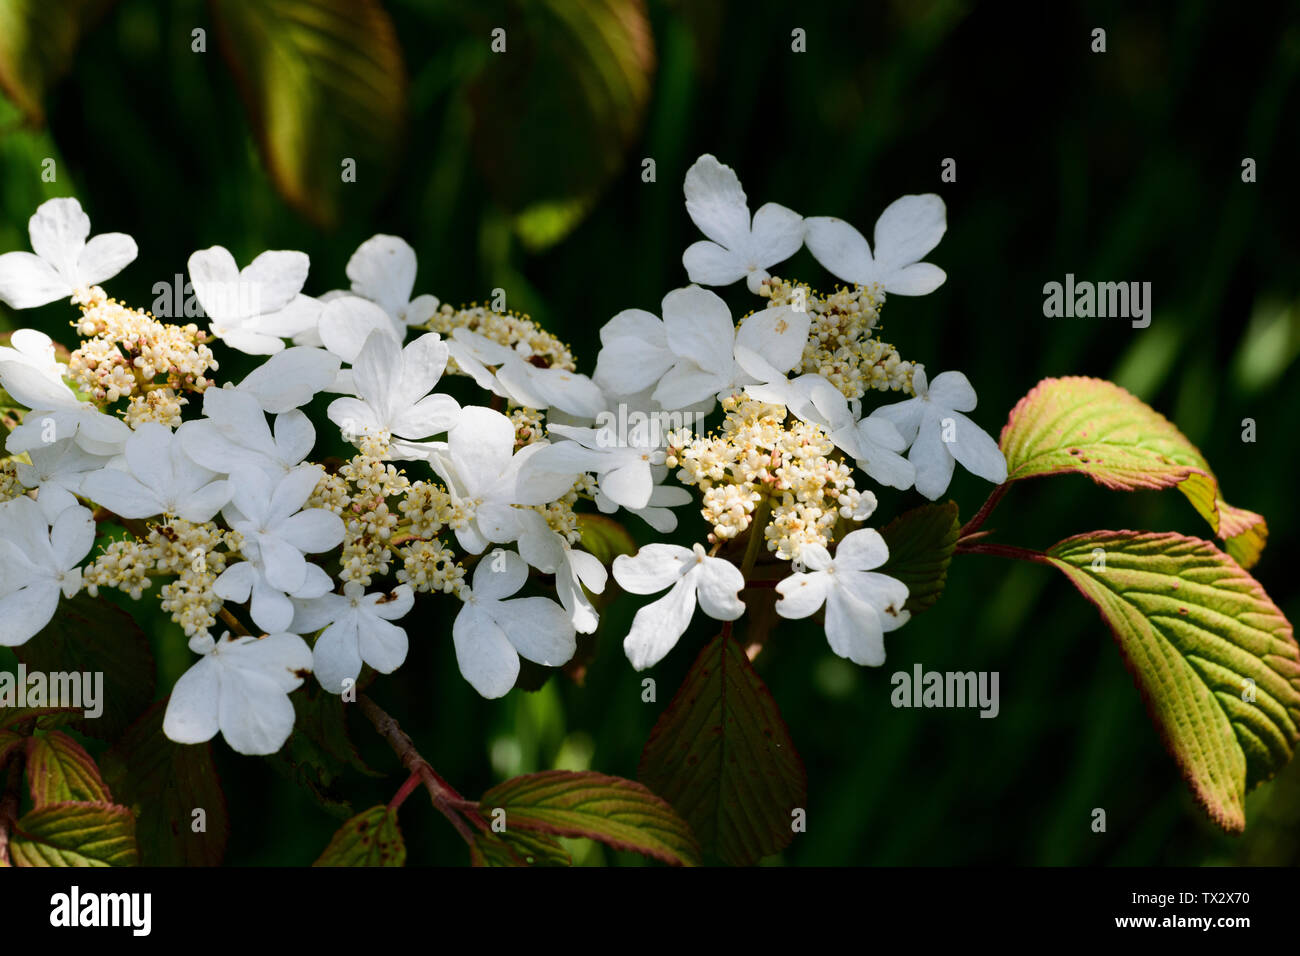 Viburnum plicatum 'Lanarth', flowers Stock Photo